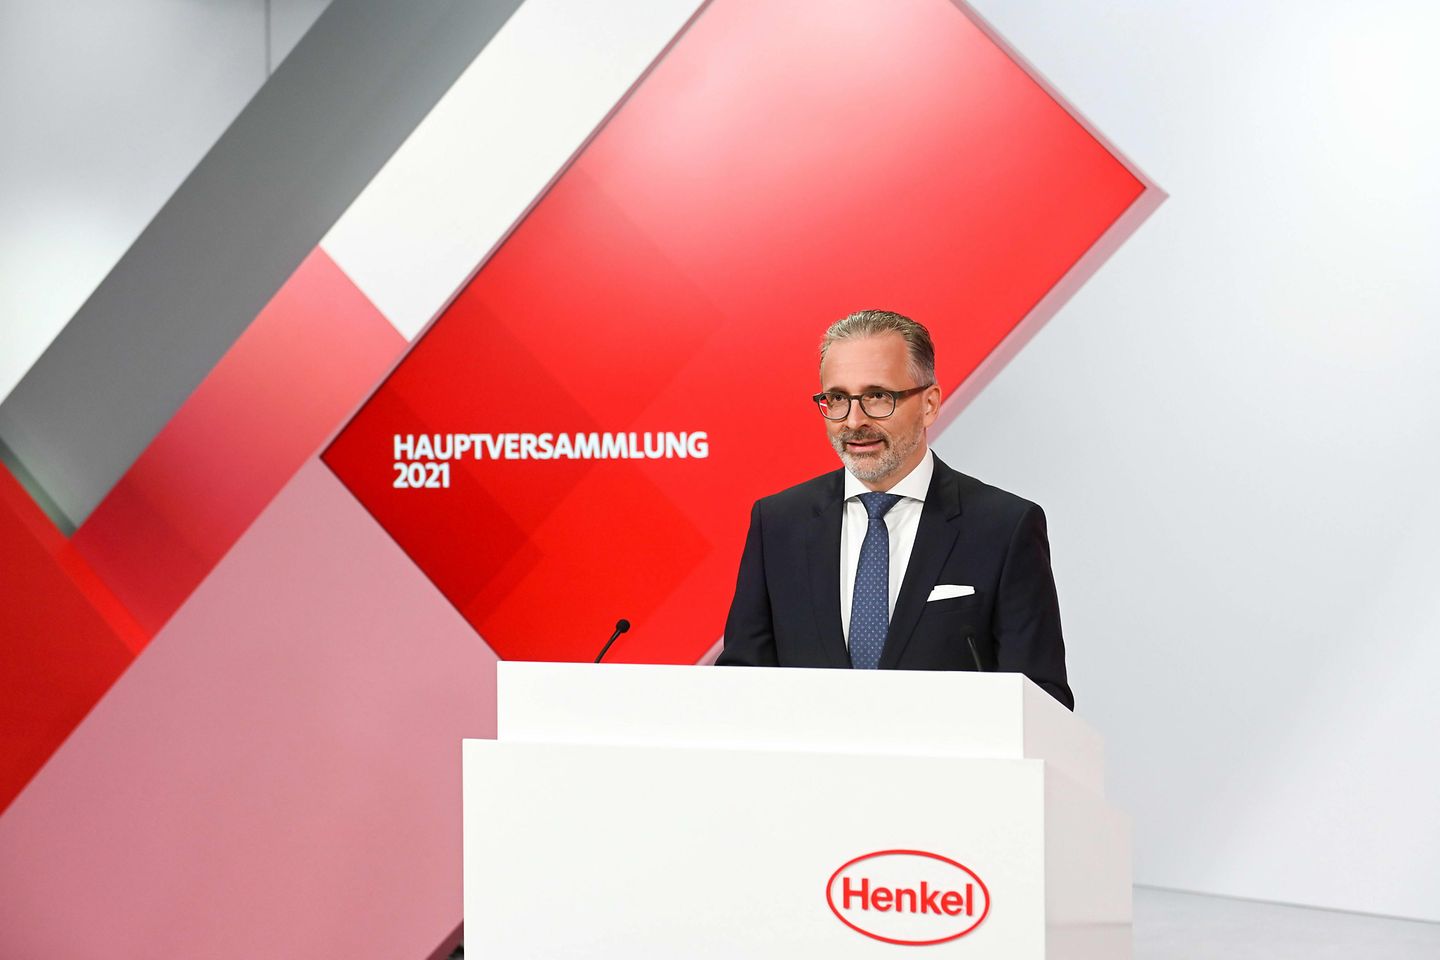 

Henkel CEO Carsten Knobel